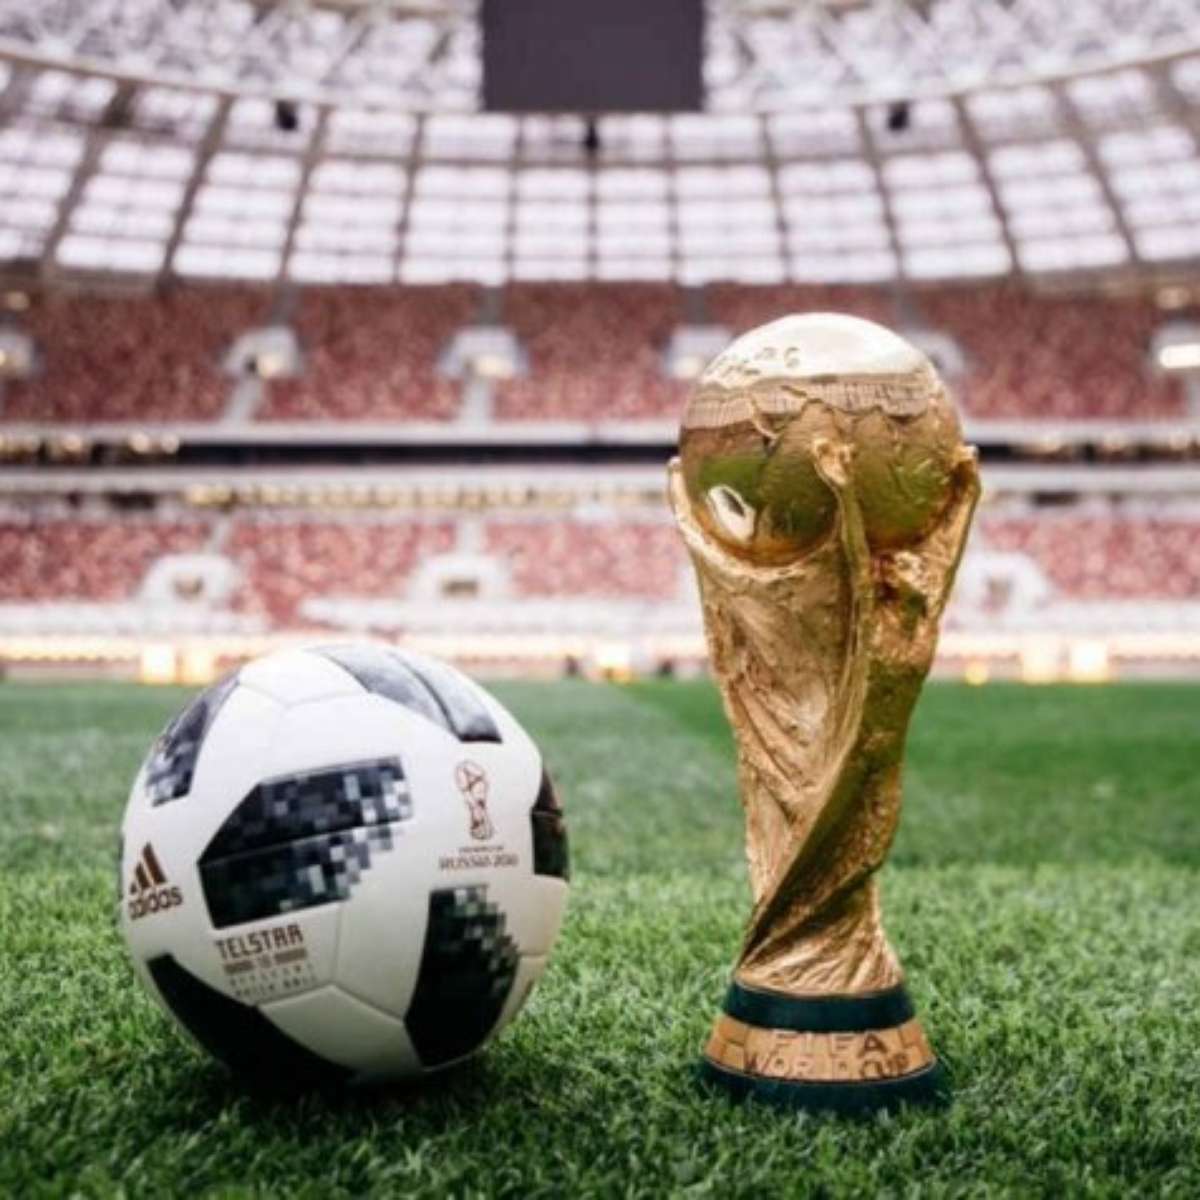 Globo vende jogos da Copa do Brasil para  para pagar conta em 2022 ·  Notícias da TV